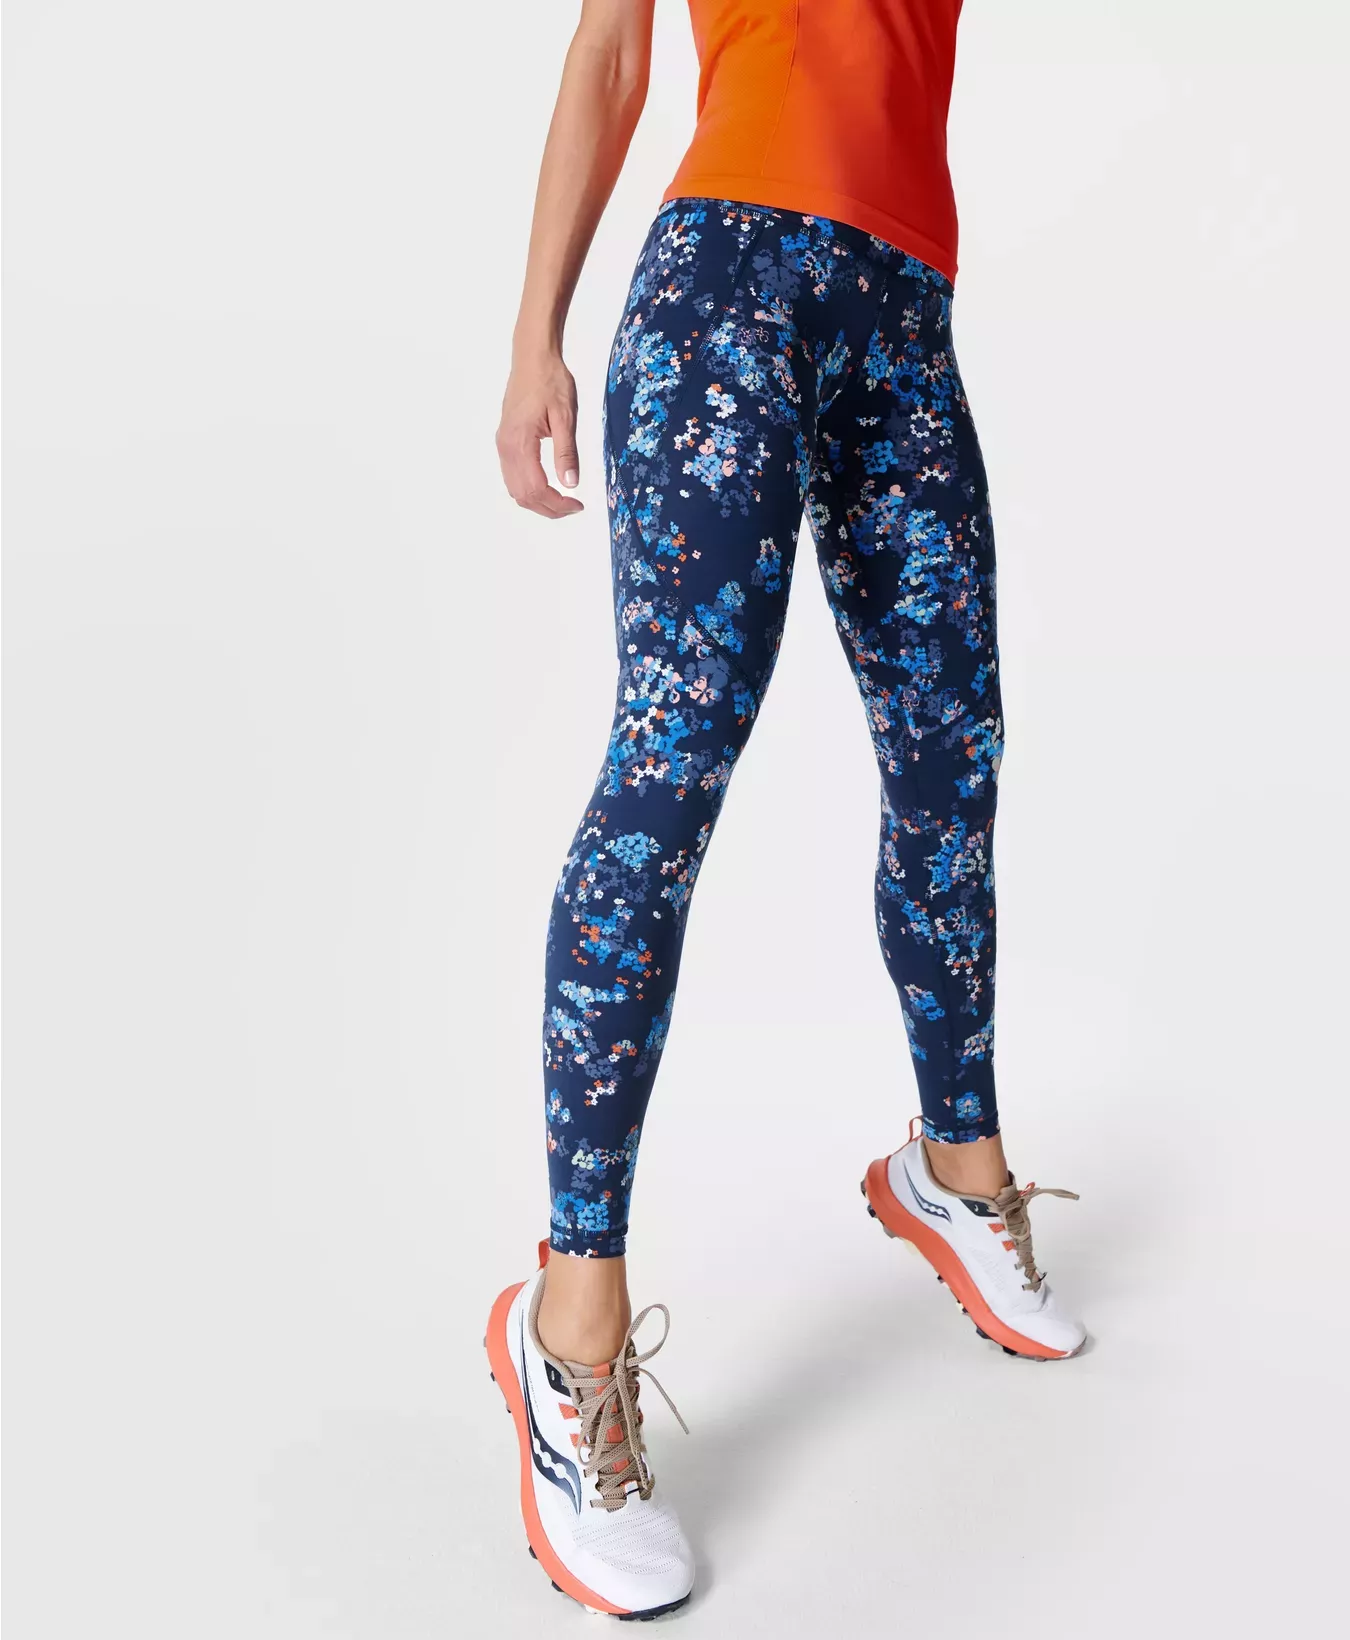 Jennifer Wrynne - Sweaty Betty leggings sale - Up to 50%